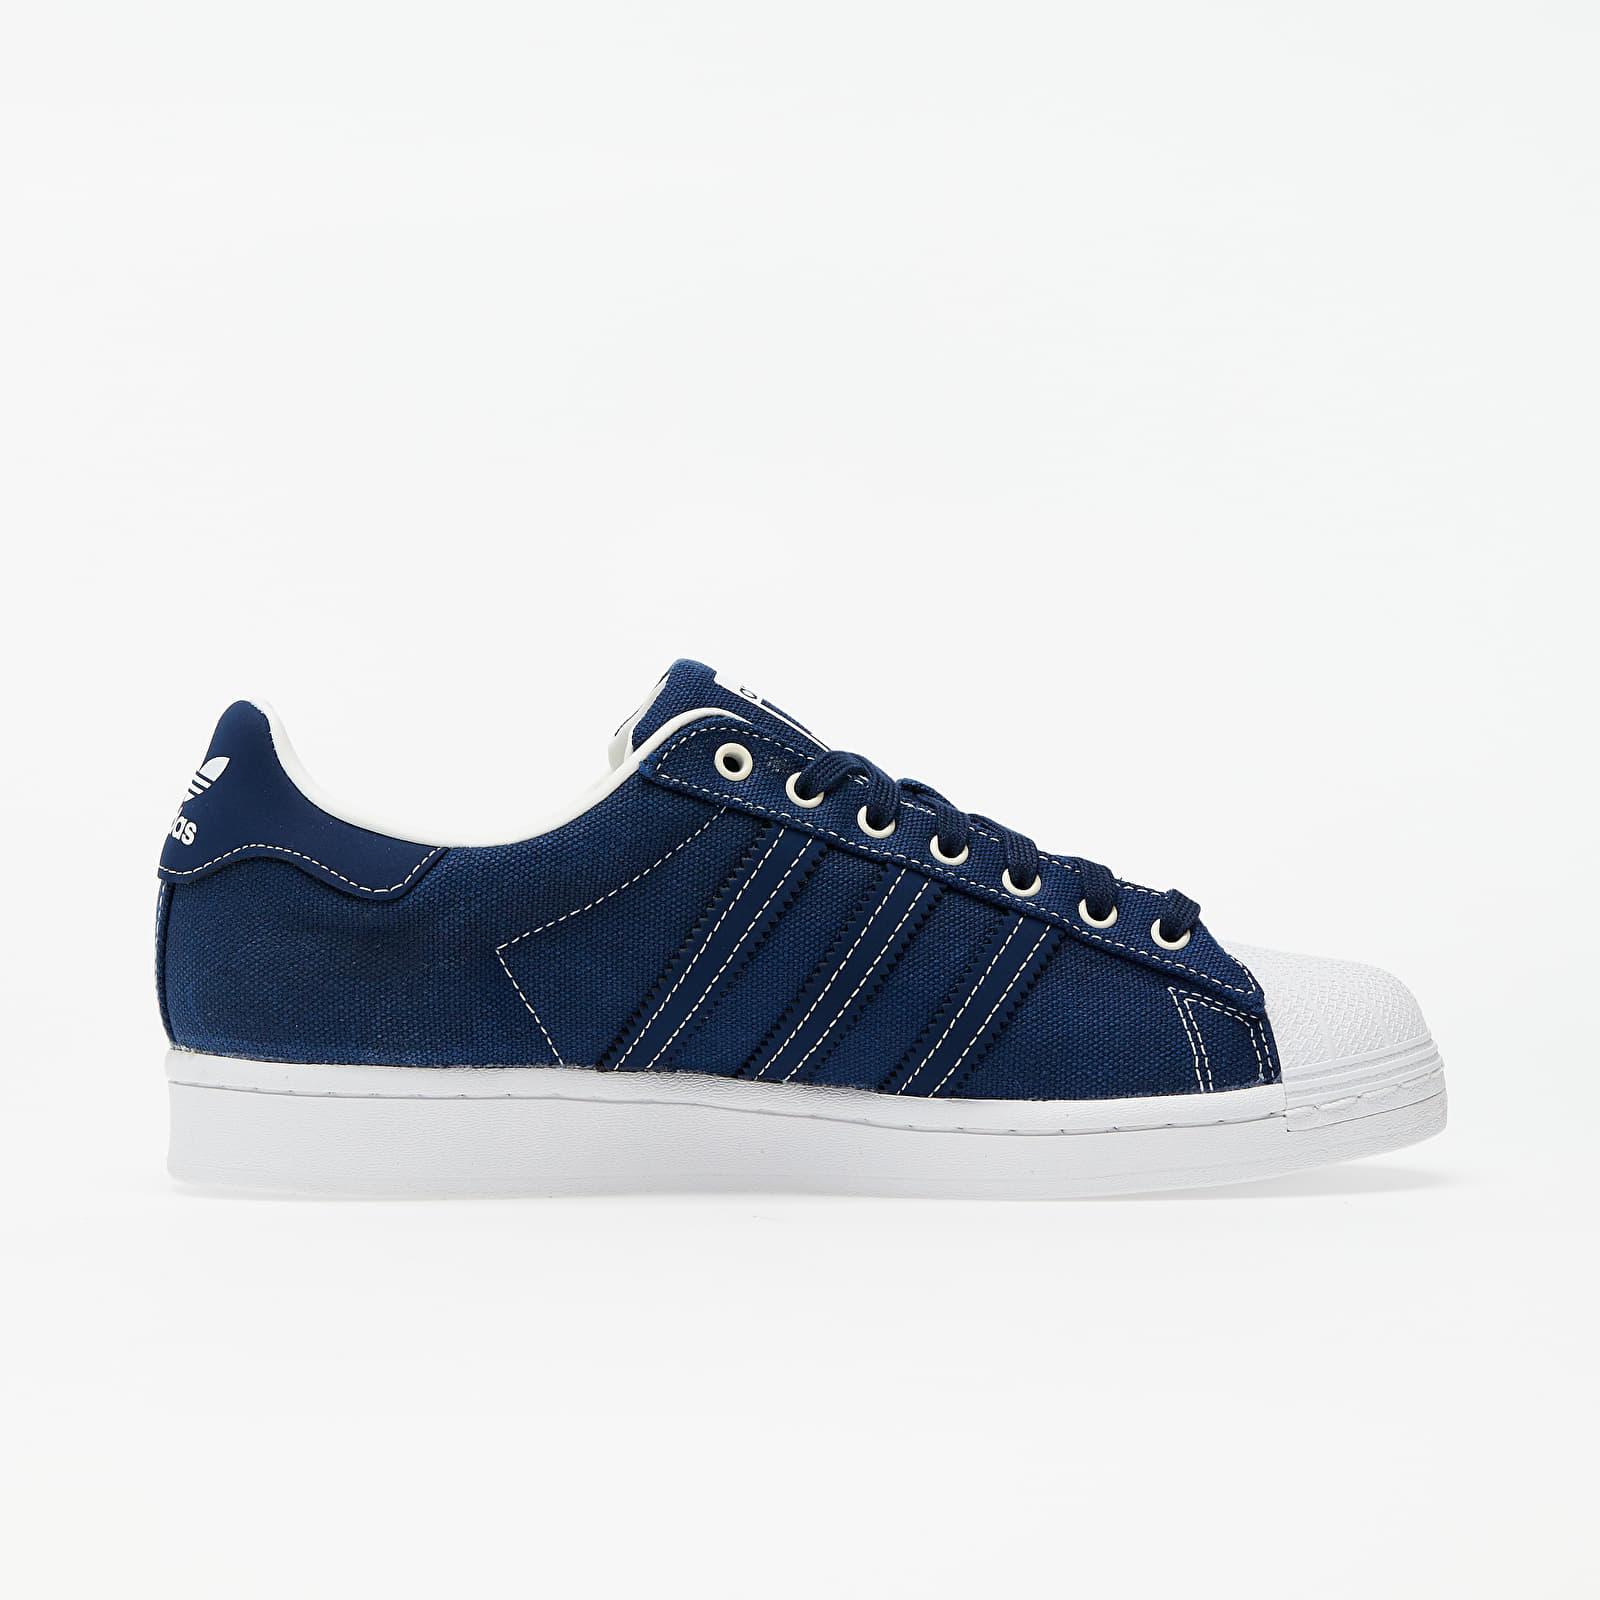 adidas Originals Adidas Superstar Navy/ Collegiate Navy/ White in Blue for Men Lyst